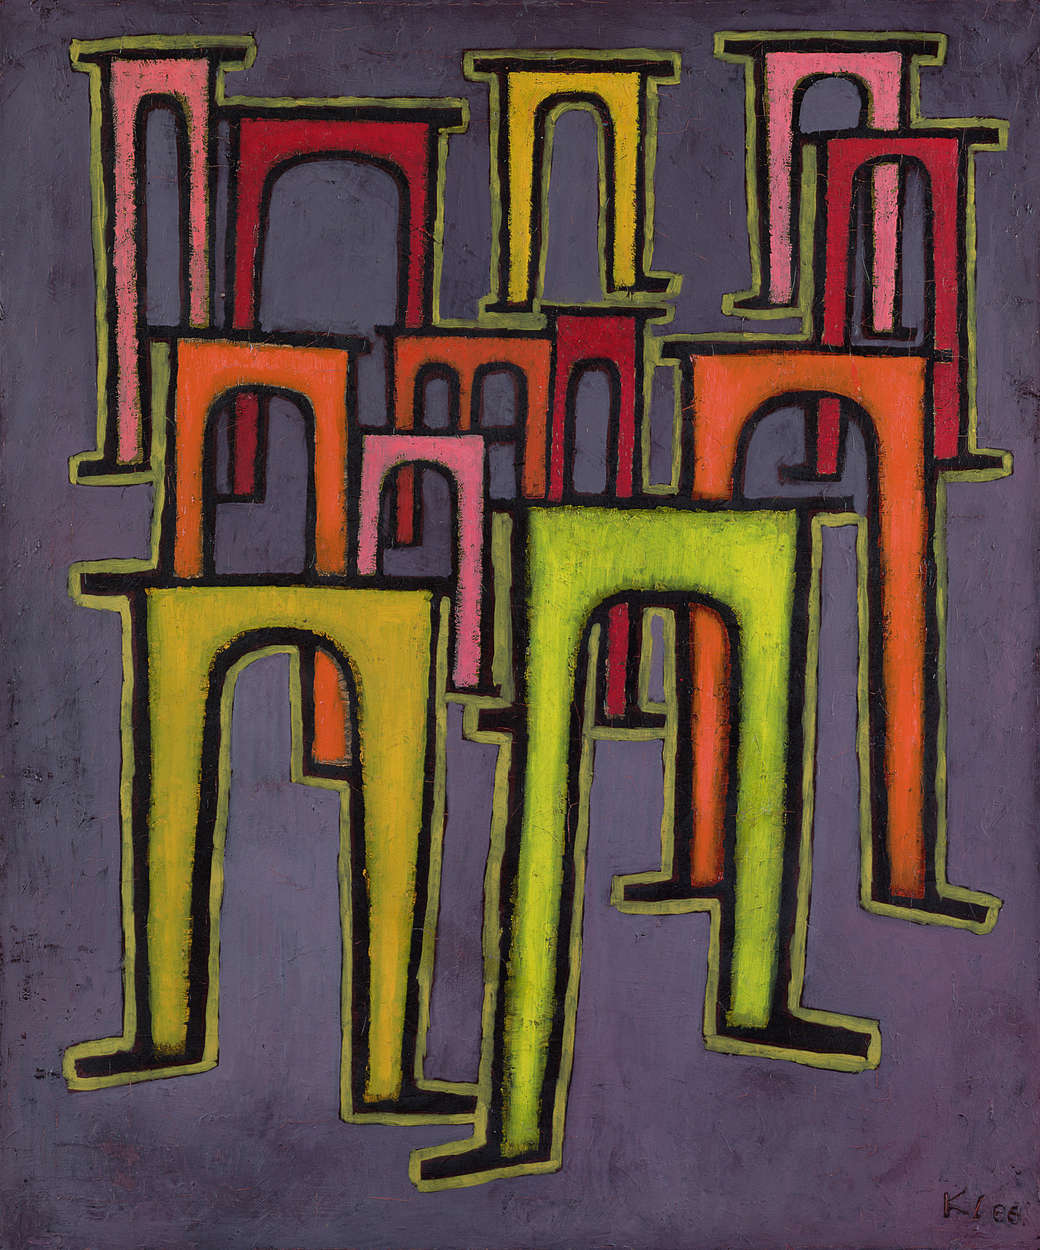             Papier peint panoramique "Révolution du viaduc" de Paul Klee
        